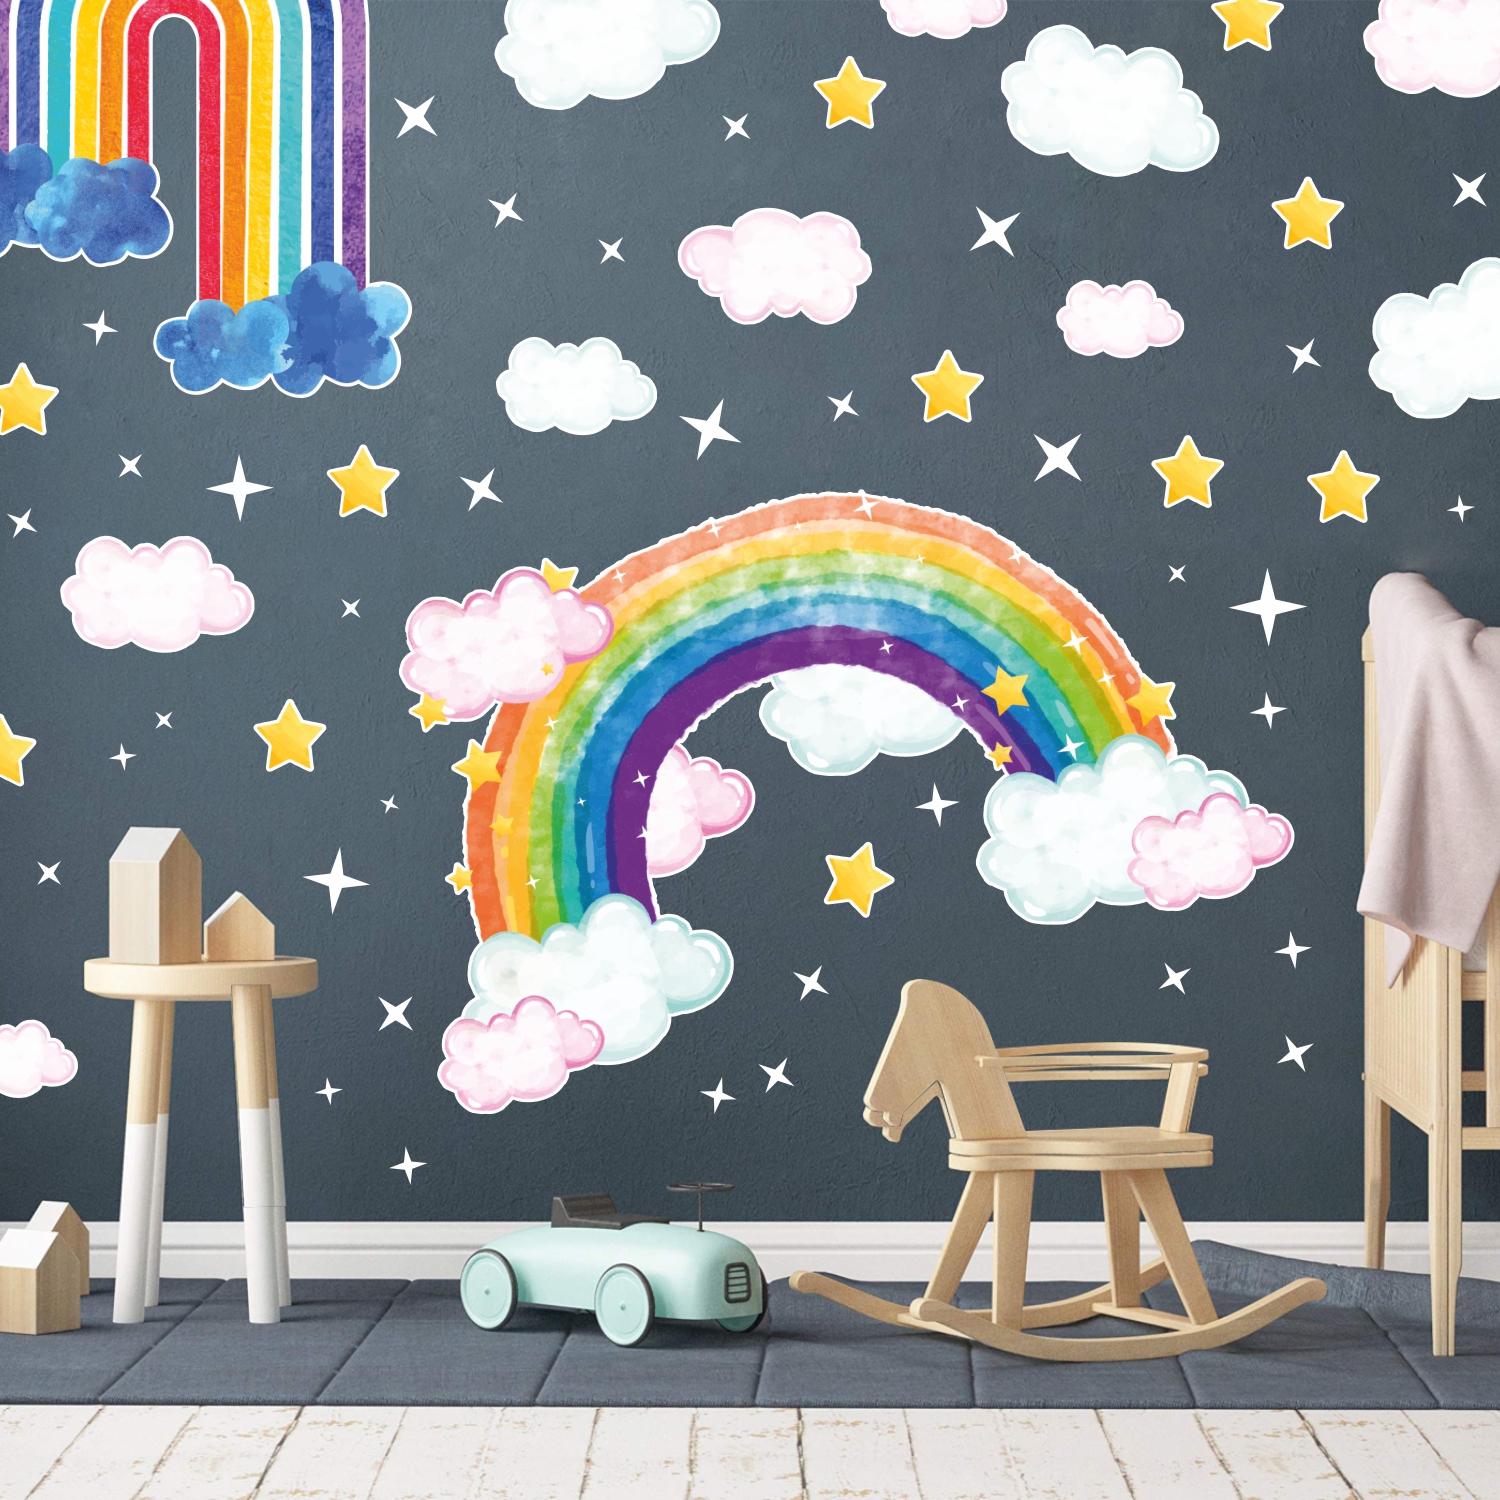 Duvar Sticker Seti, Çocuk Odası, Gökkuşağı Rüyası, S20EVD06